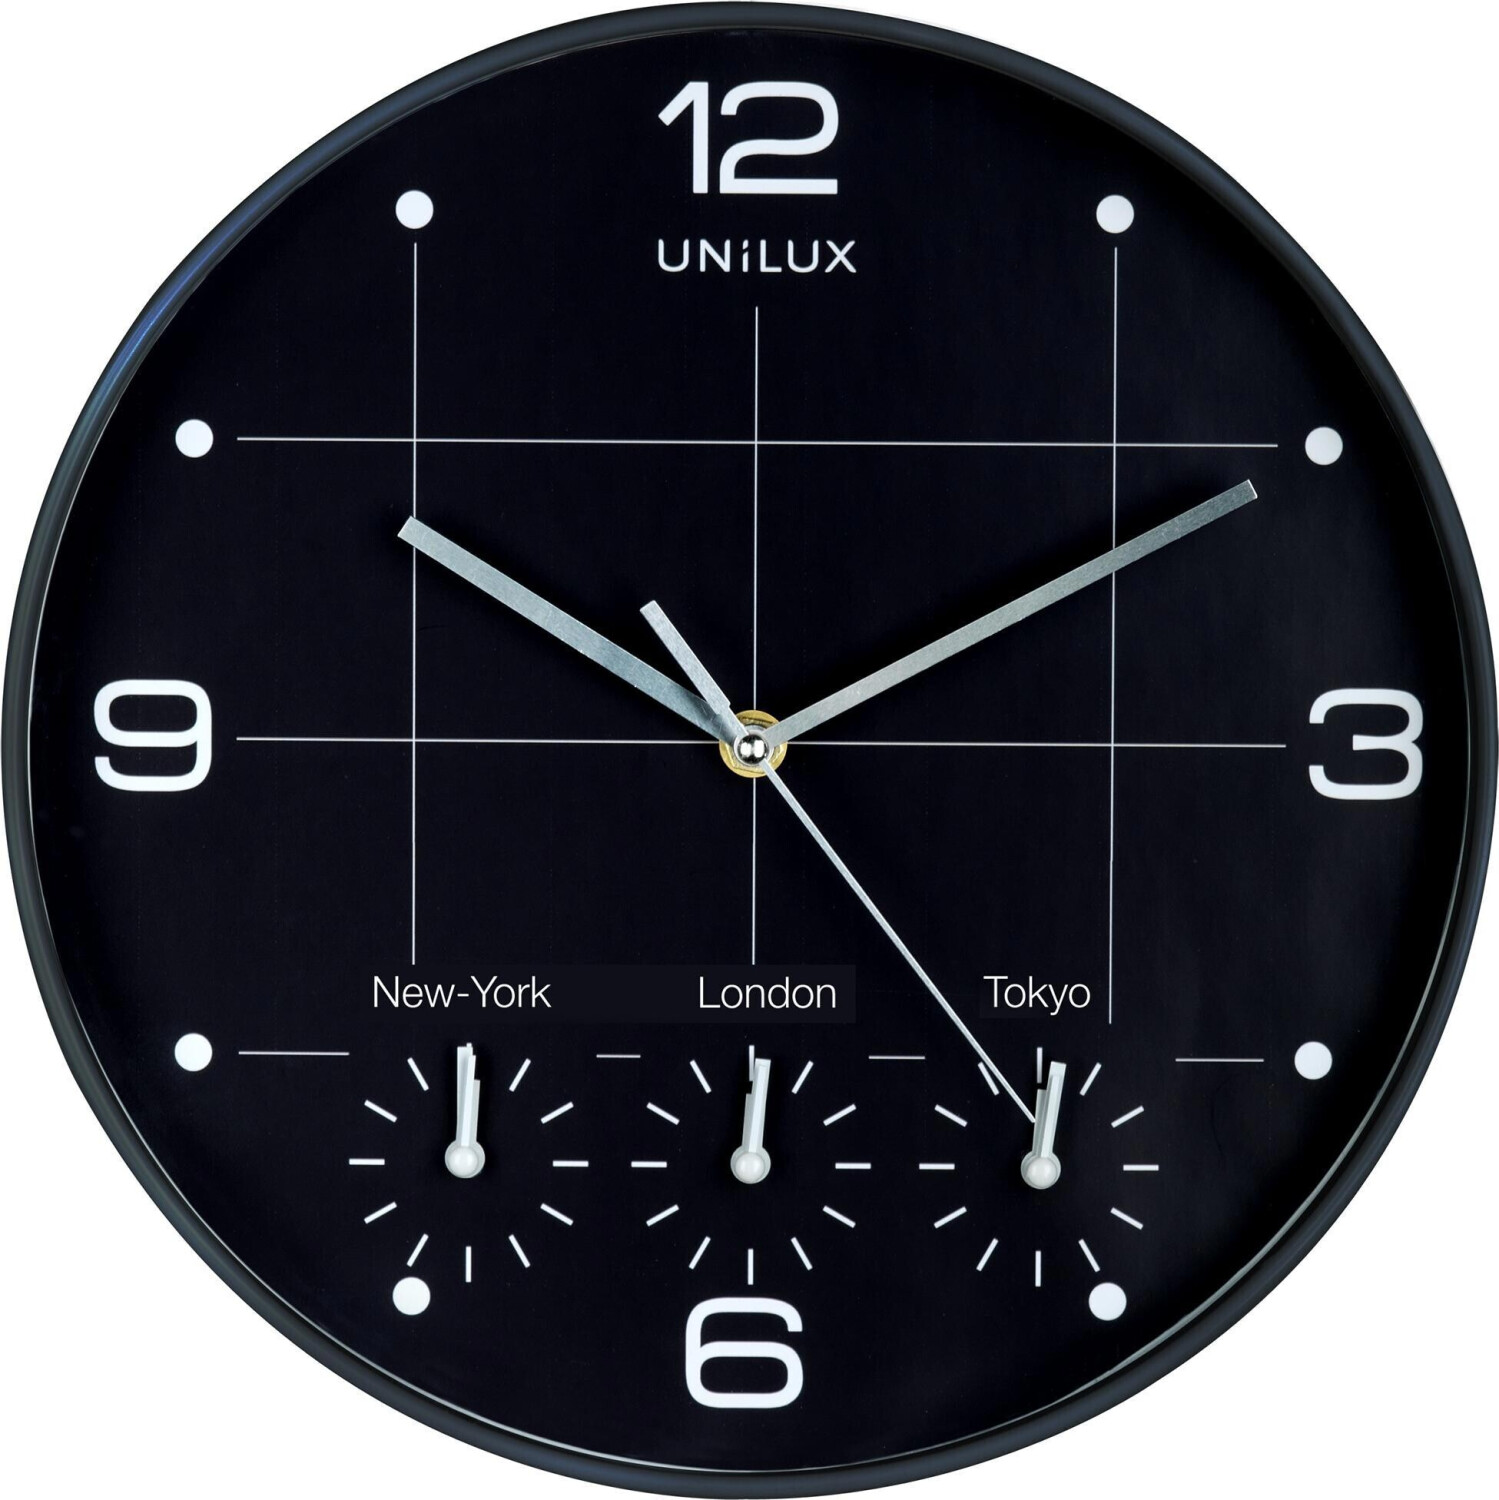 LED-Uhr Unilux FLO 400124566 schwarz: eOFFICE24